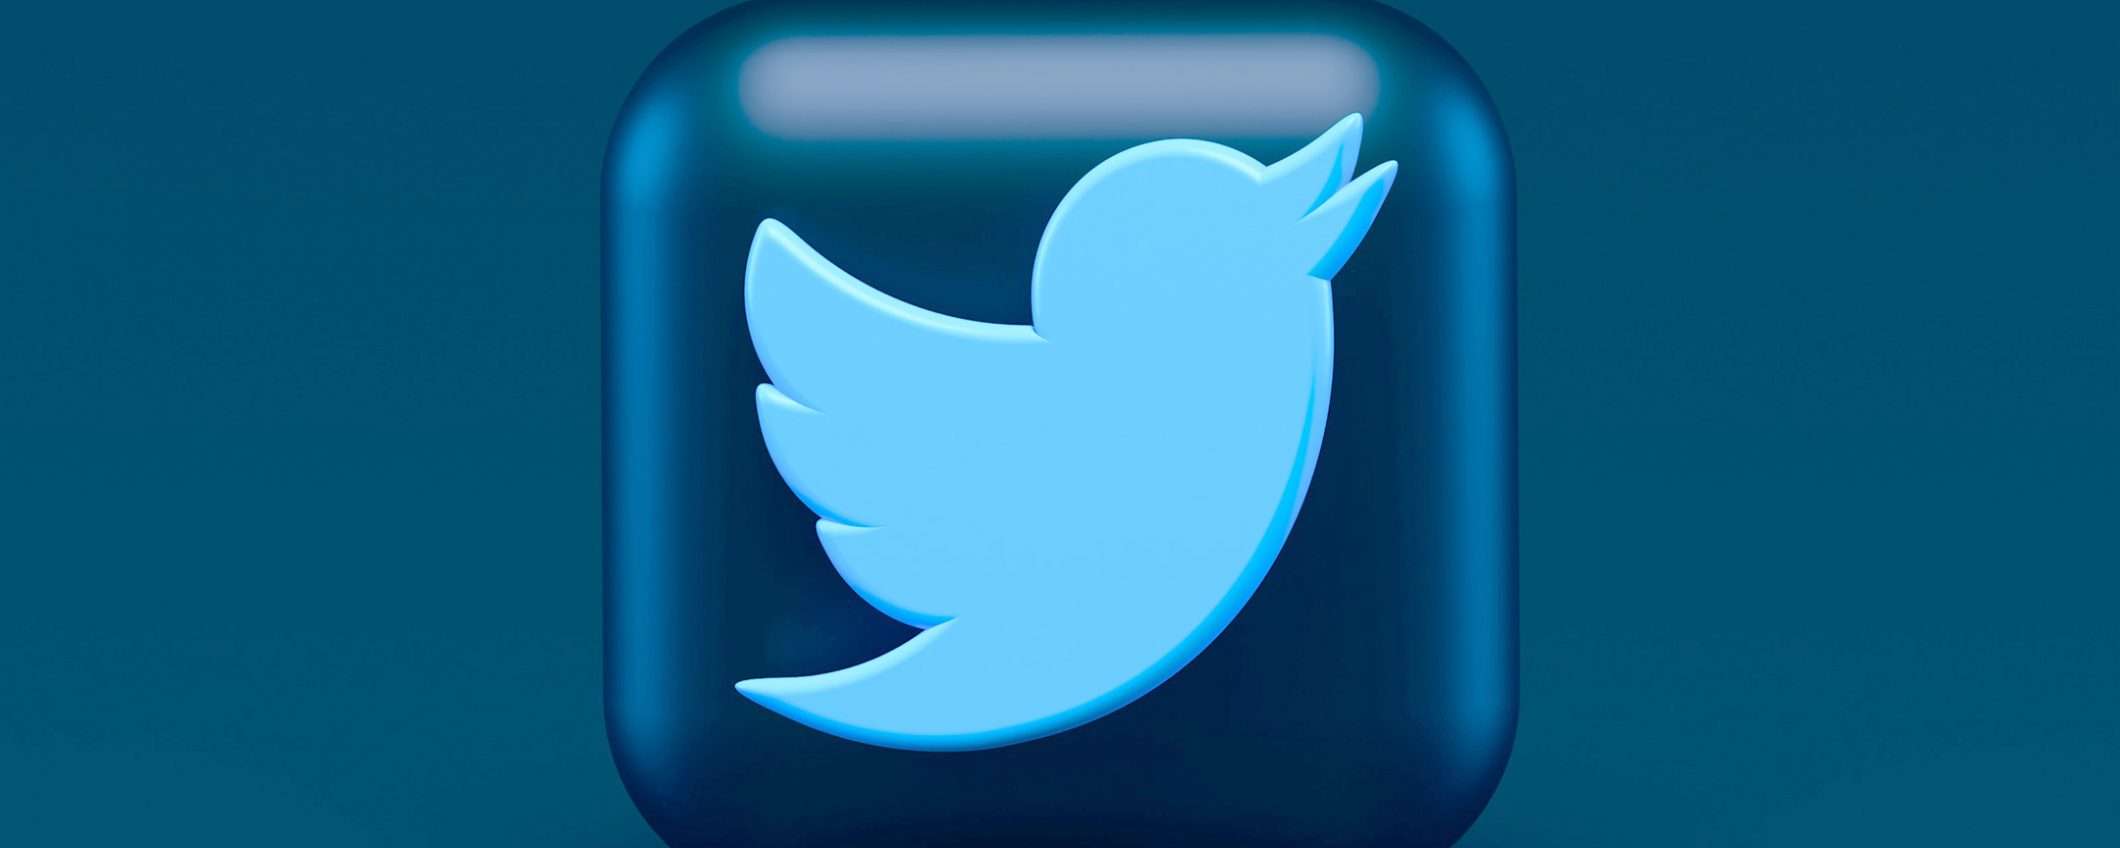 Twitter ha aggiornato le opzioni per il feed